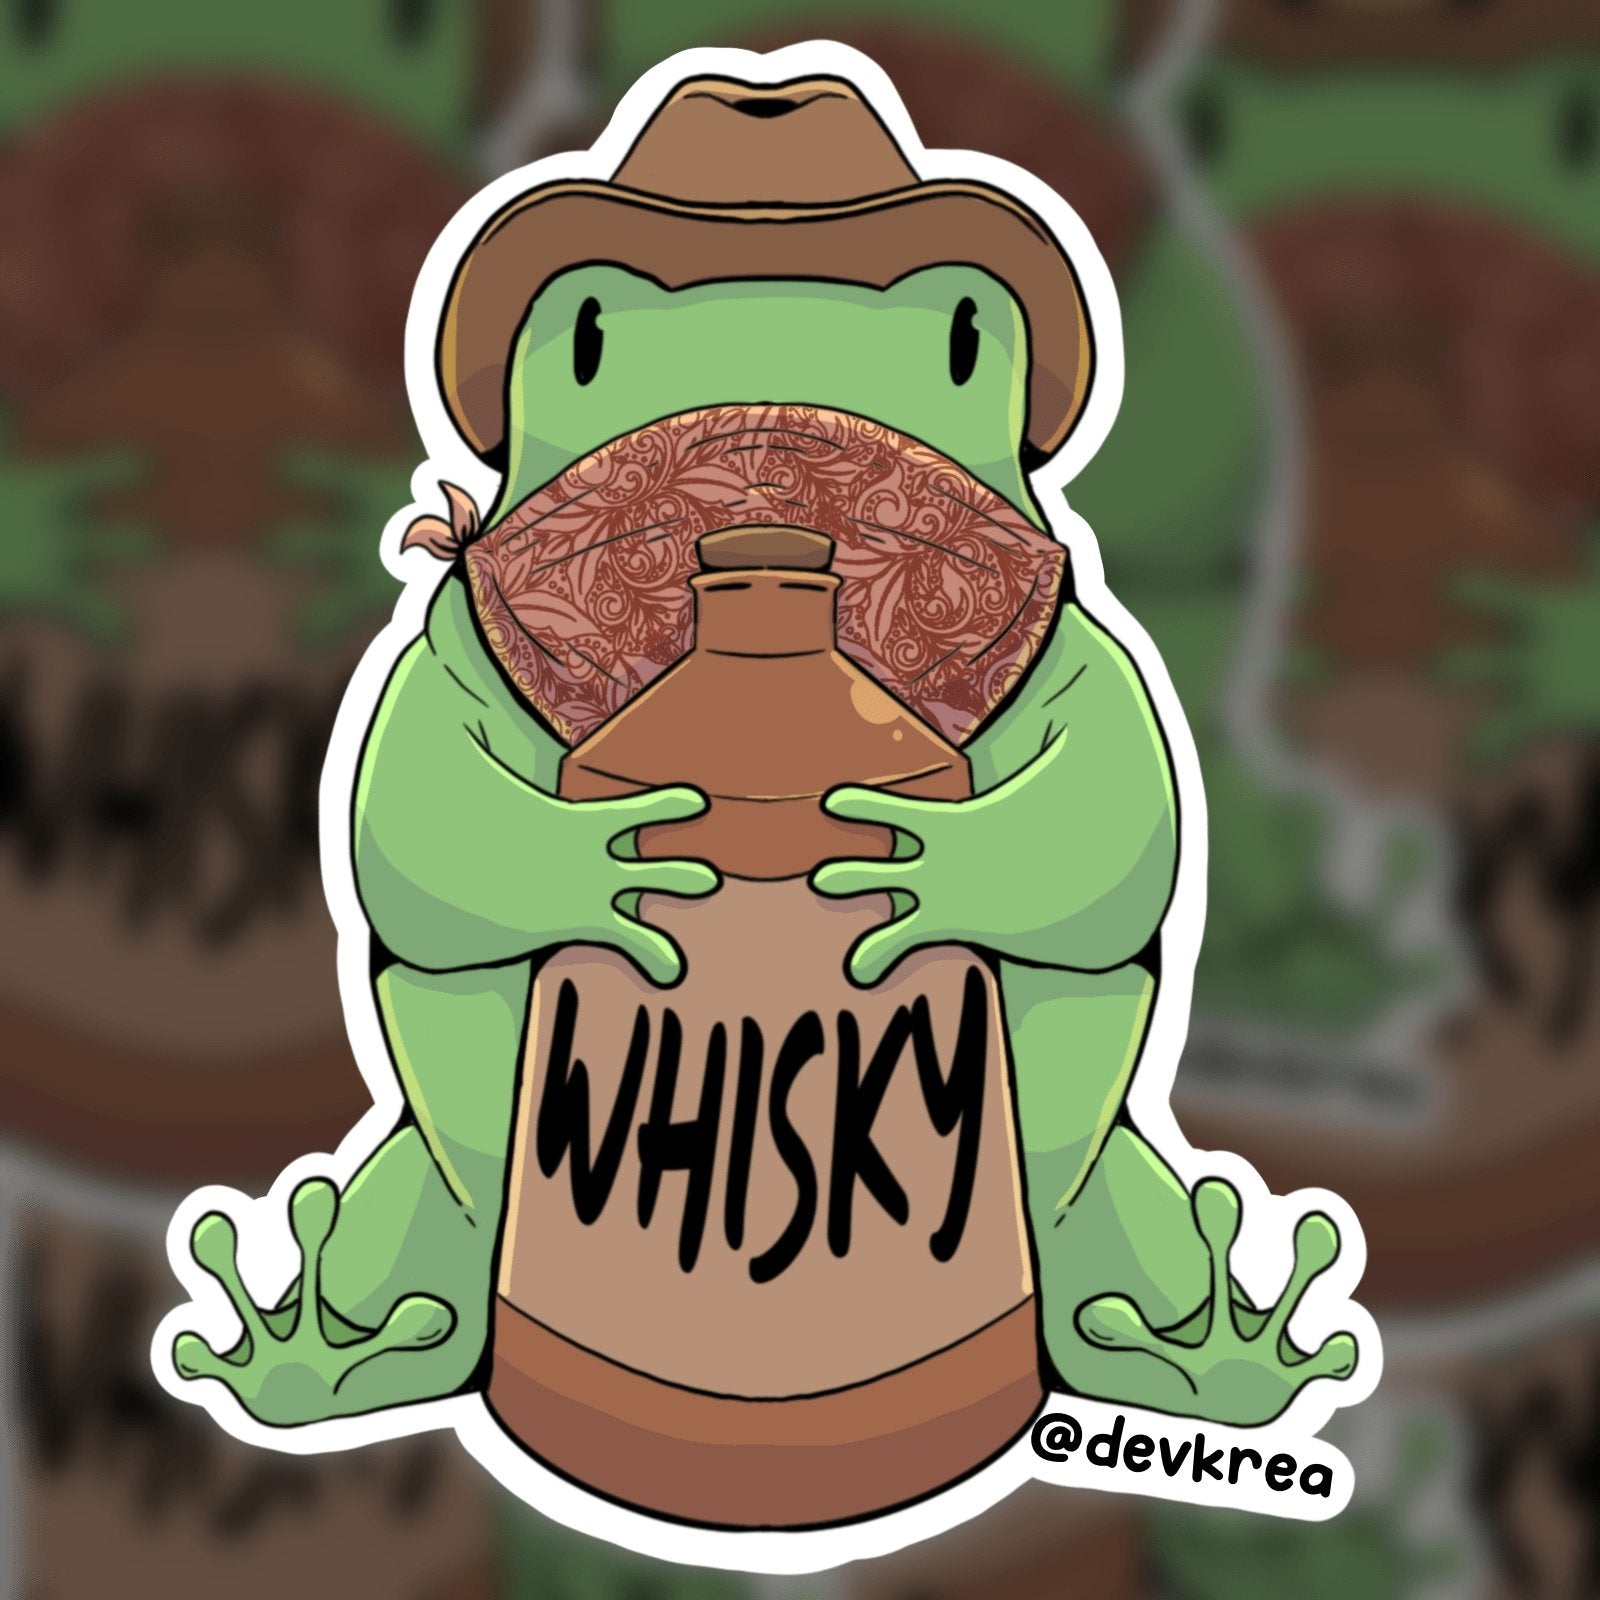 Whisky Frog Sticker | 3" | DevKrea - Deviantkreations